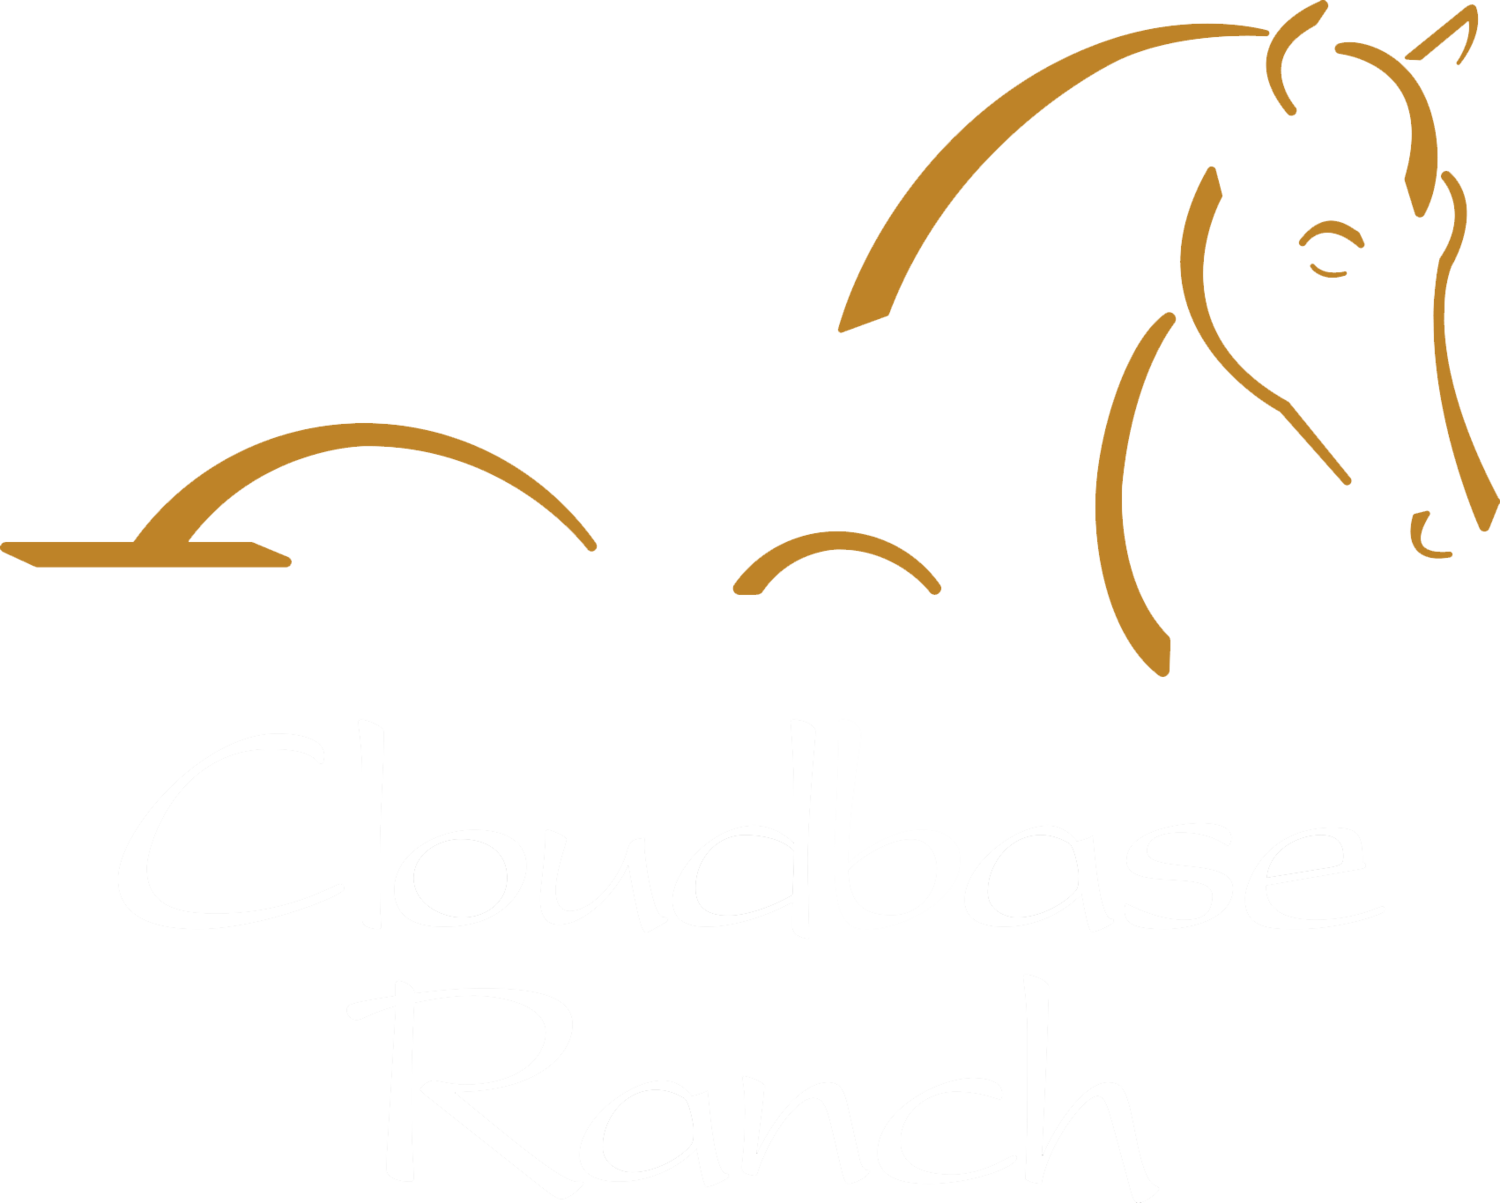 Cloudbase Ranch